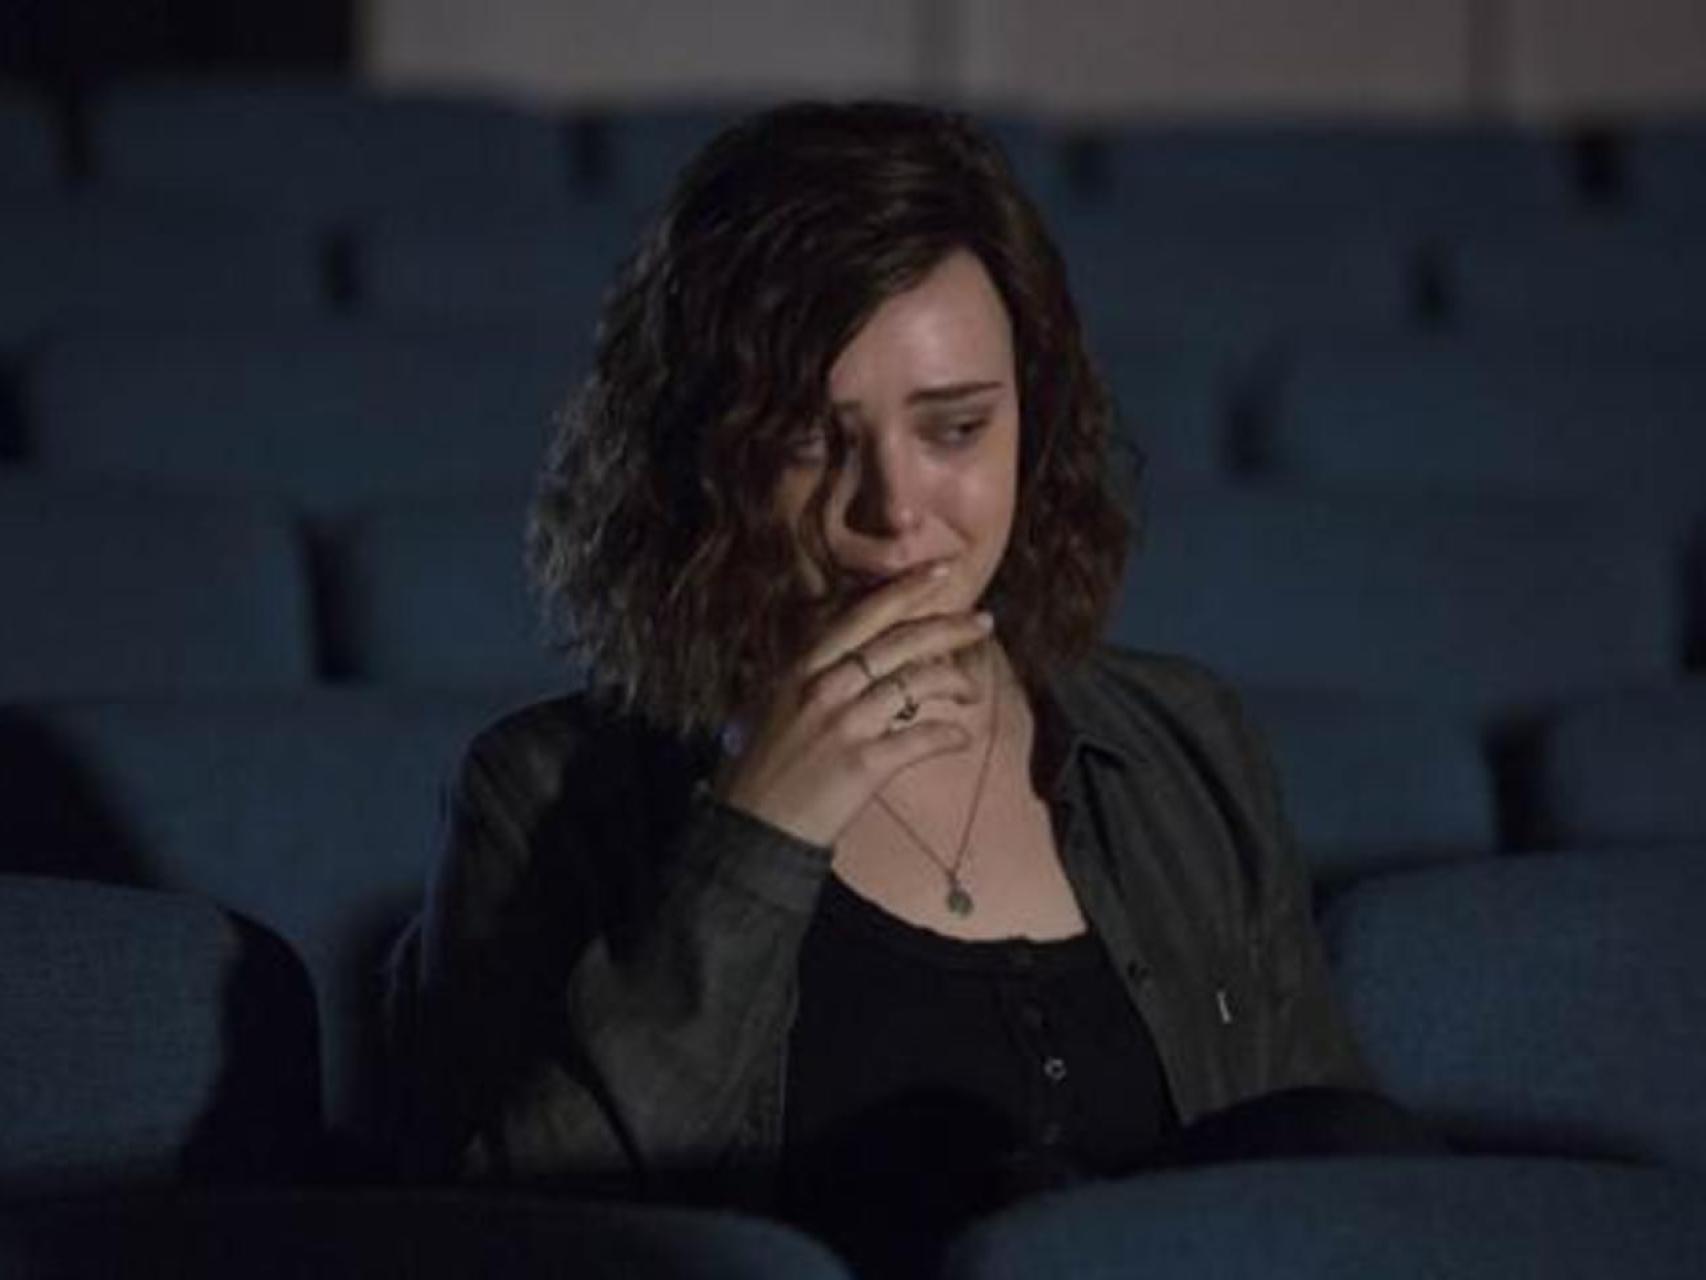 Suicidio adolescente, anorexia y bullying televisado: ¿Netflix conciencia o  frivoliza?